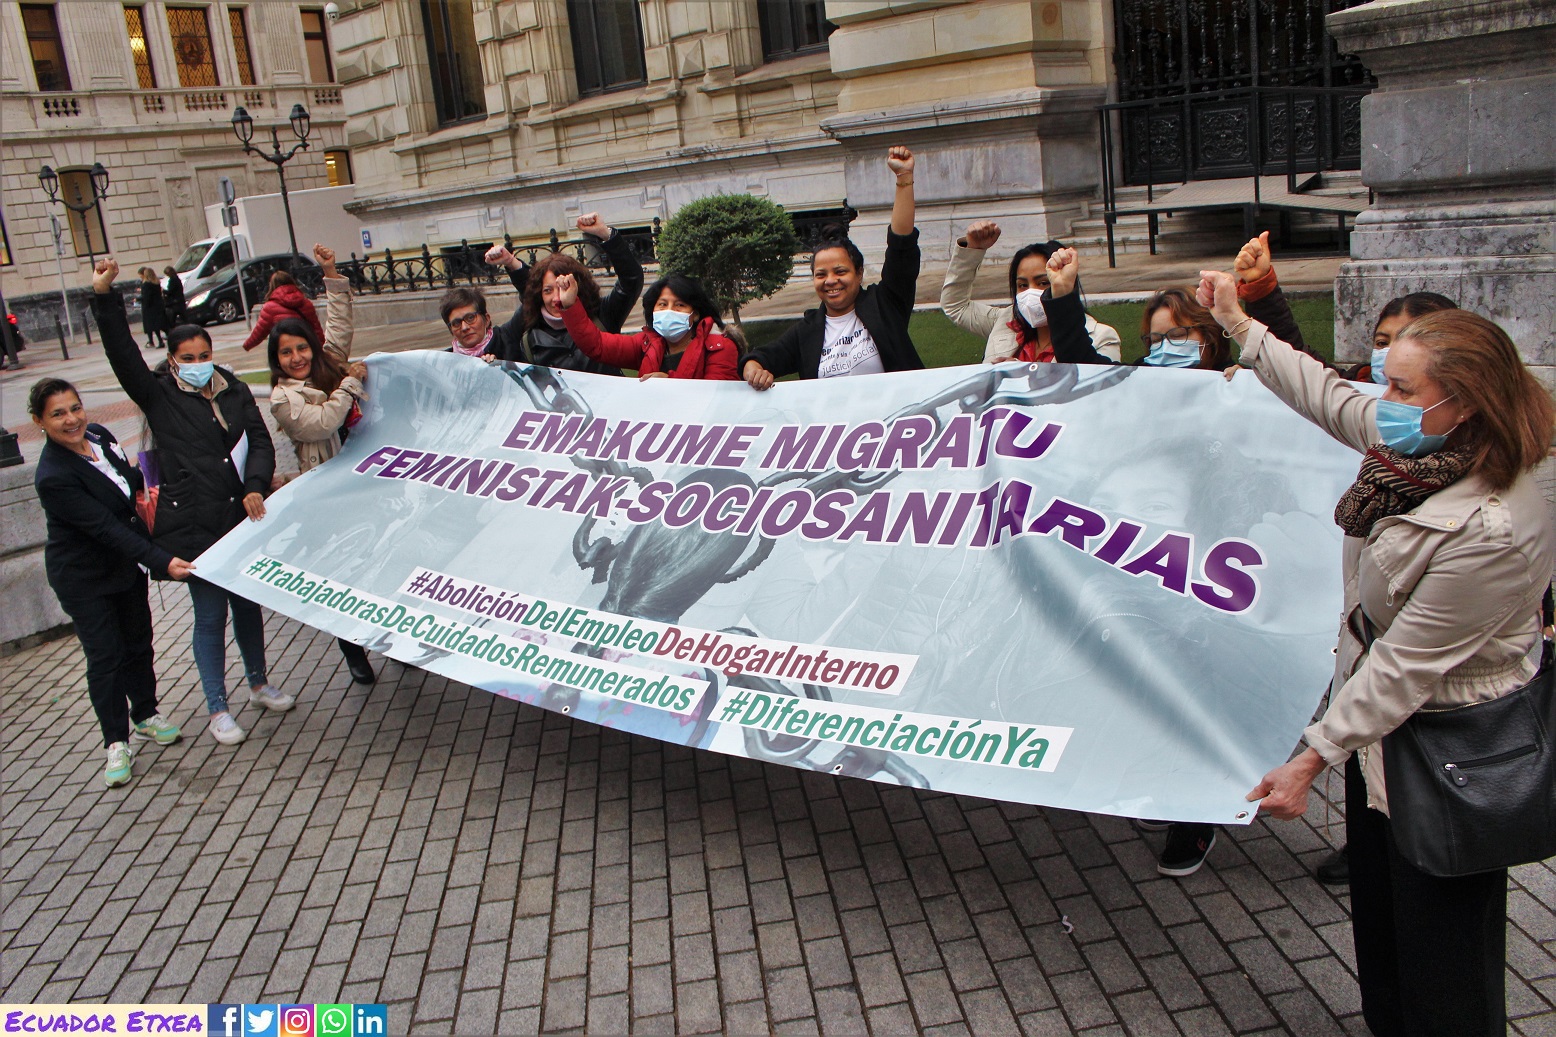 Mujeres-Migradas-Feministas-Cuidadoras-Socio-sanitarias-bilbao-vasco-abolición-empleo-hogar-interno-extranjería